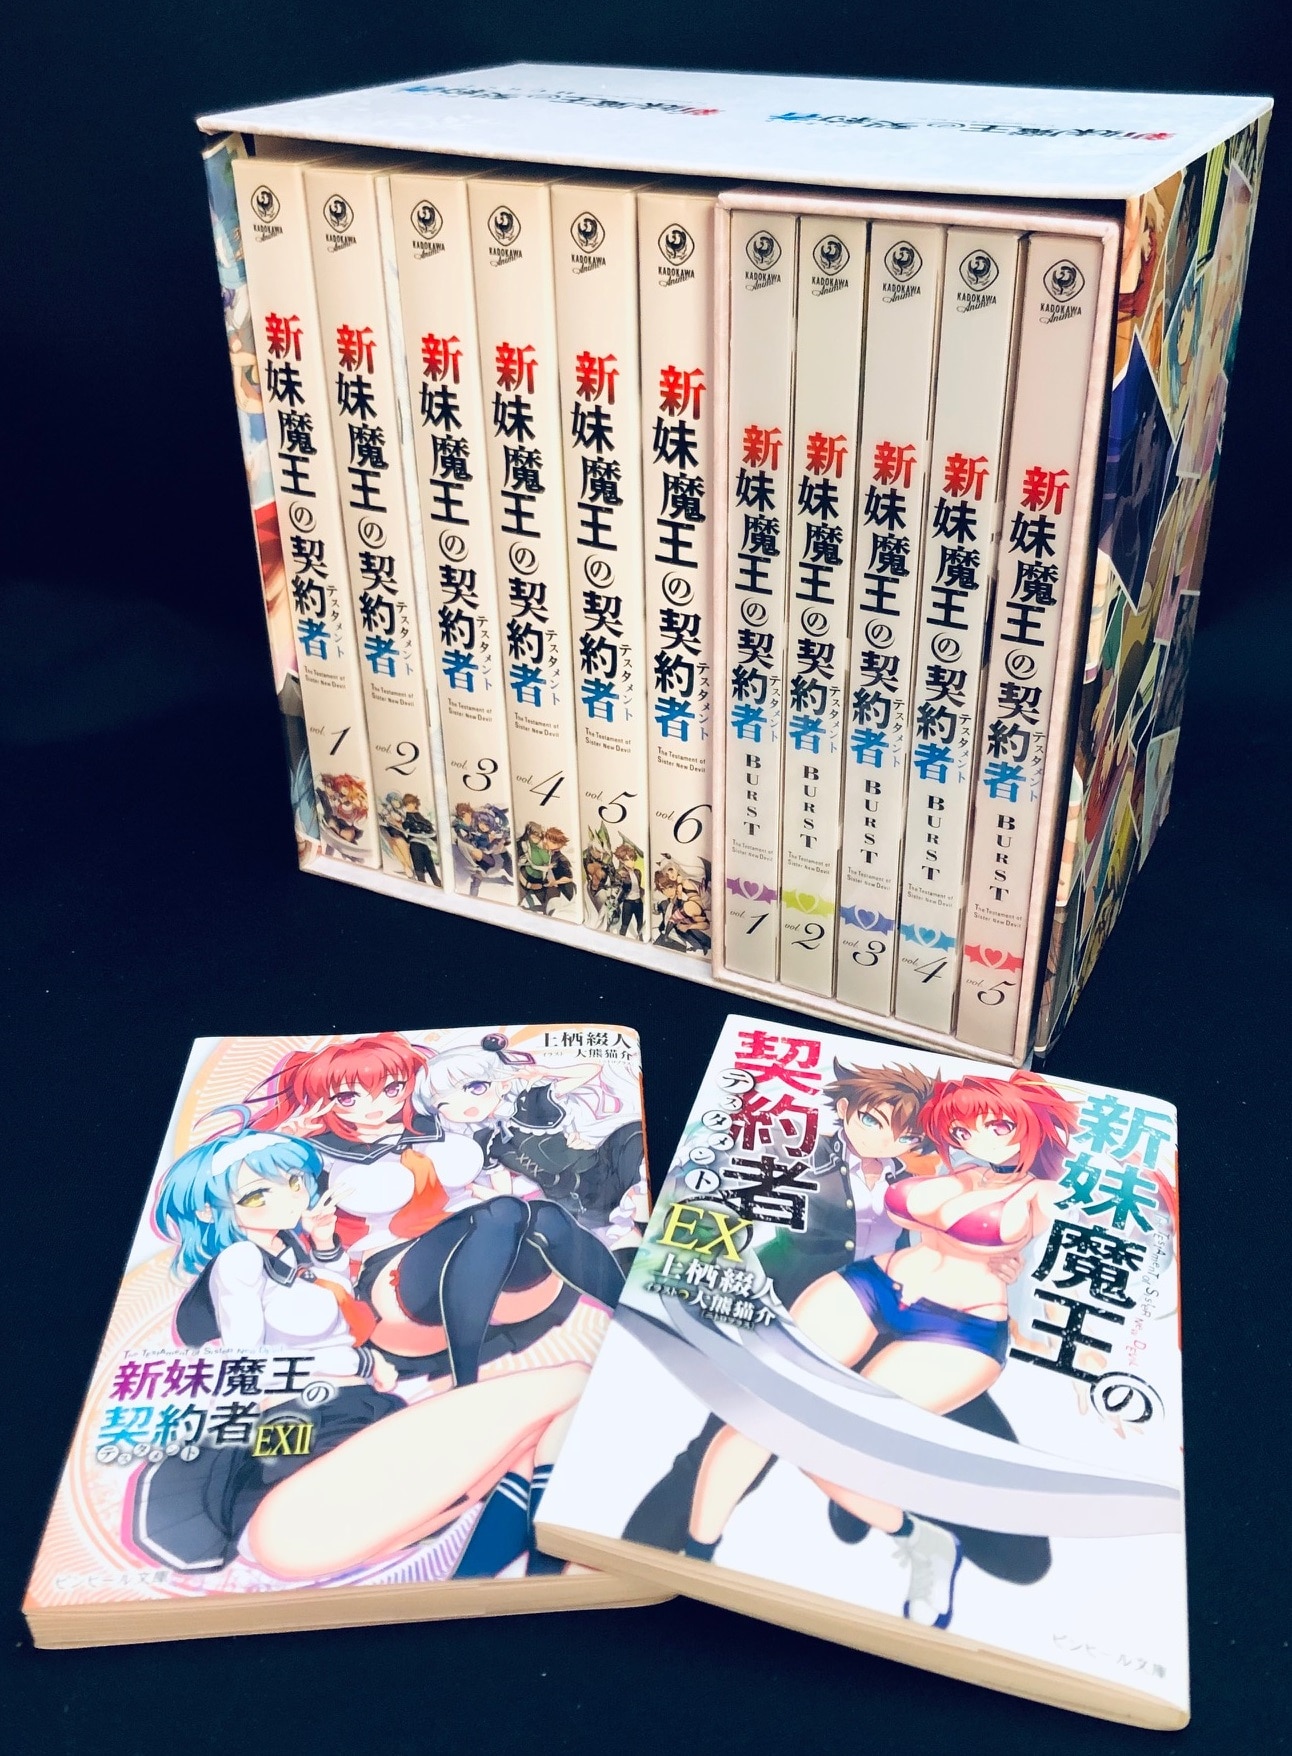 アニメBlu-ray 【とらのあなBOX付】新妹魔王の契約者 1期+2期 全11巻